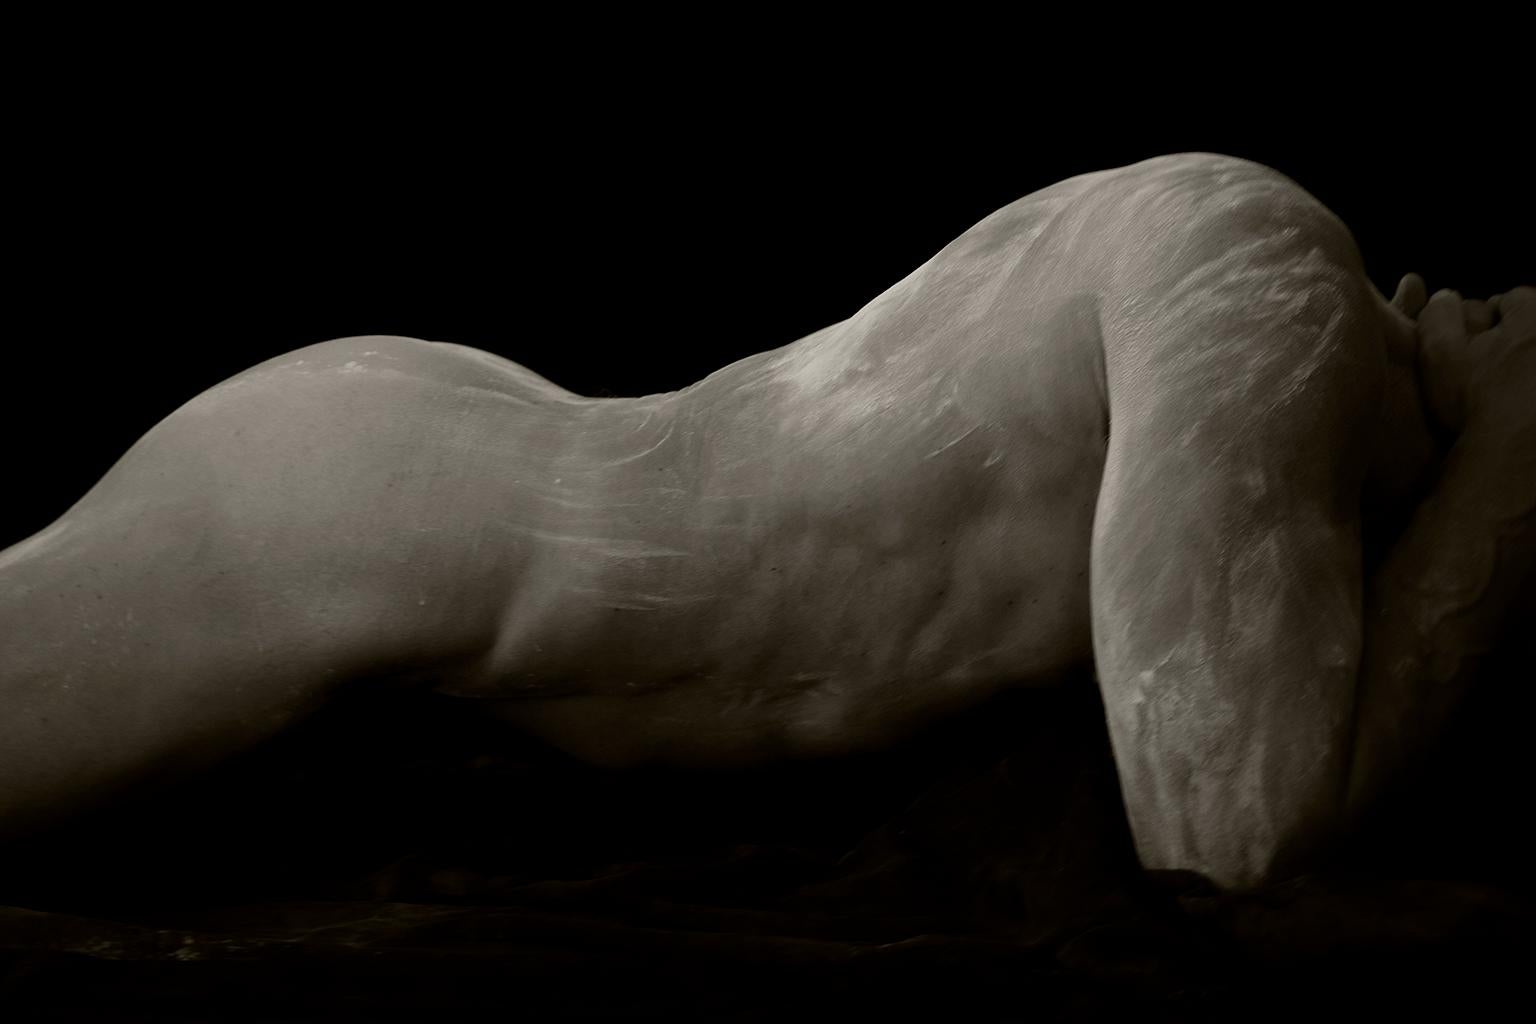 Black and White Photograph Ricky Cohete - Sculpture de Cornelio, 3. Nu masculin. Photographie en noir et blanc en édition limitée